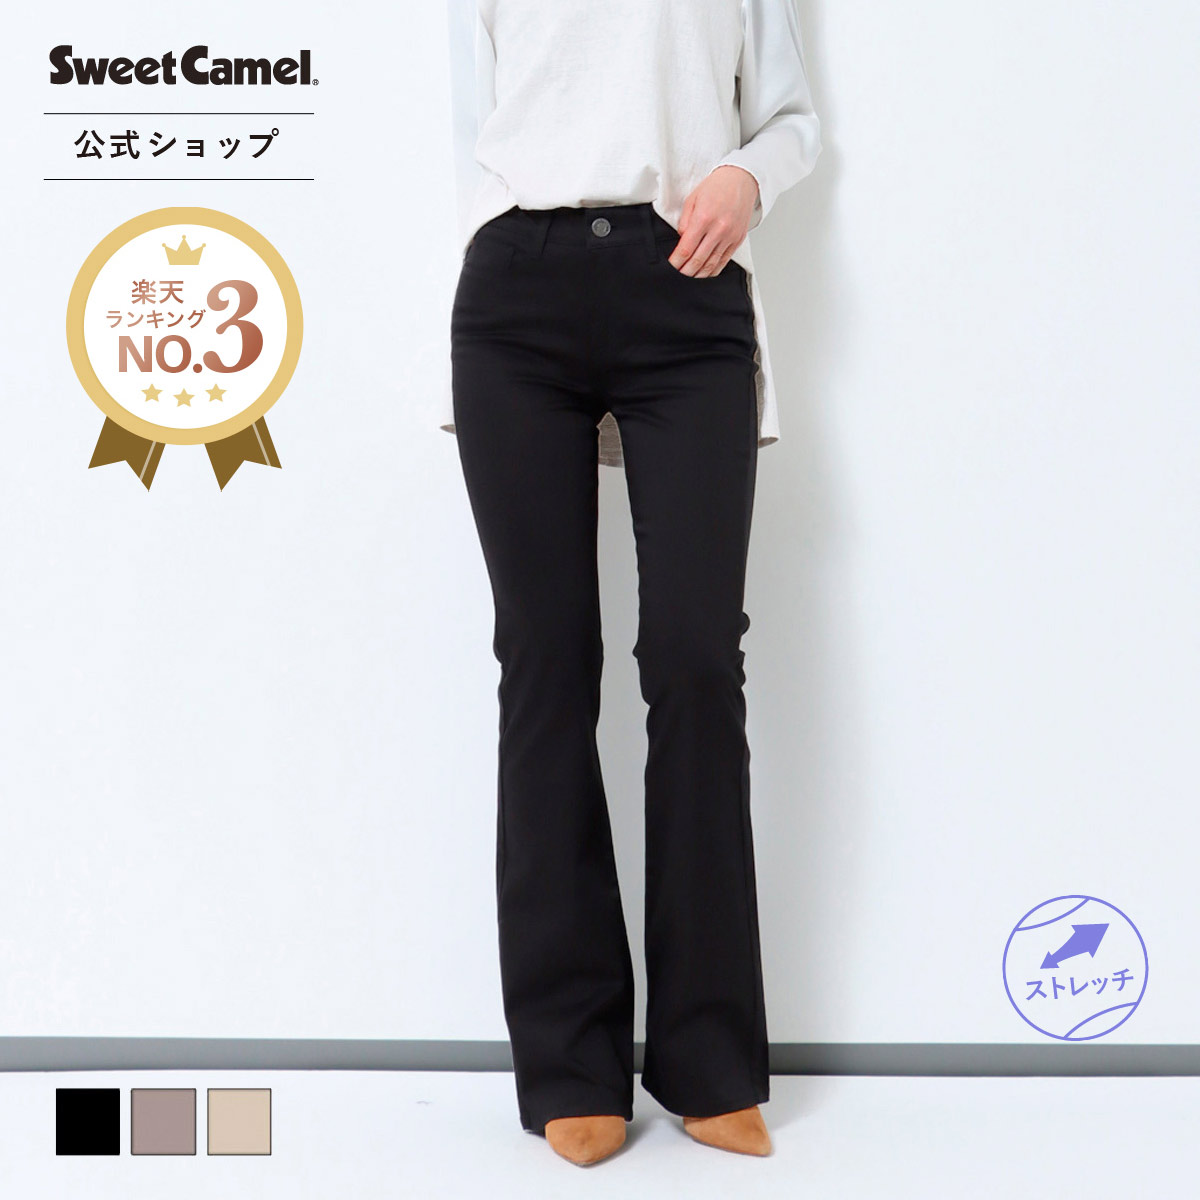 Sweet Camel スウィートキャメル ブーツカット 黒 55 67cm サテン 日本製 レディース パンツ ベージュ ベストセラー